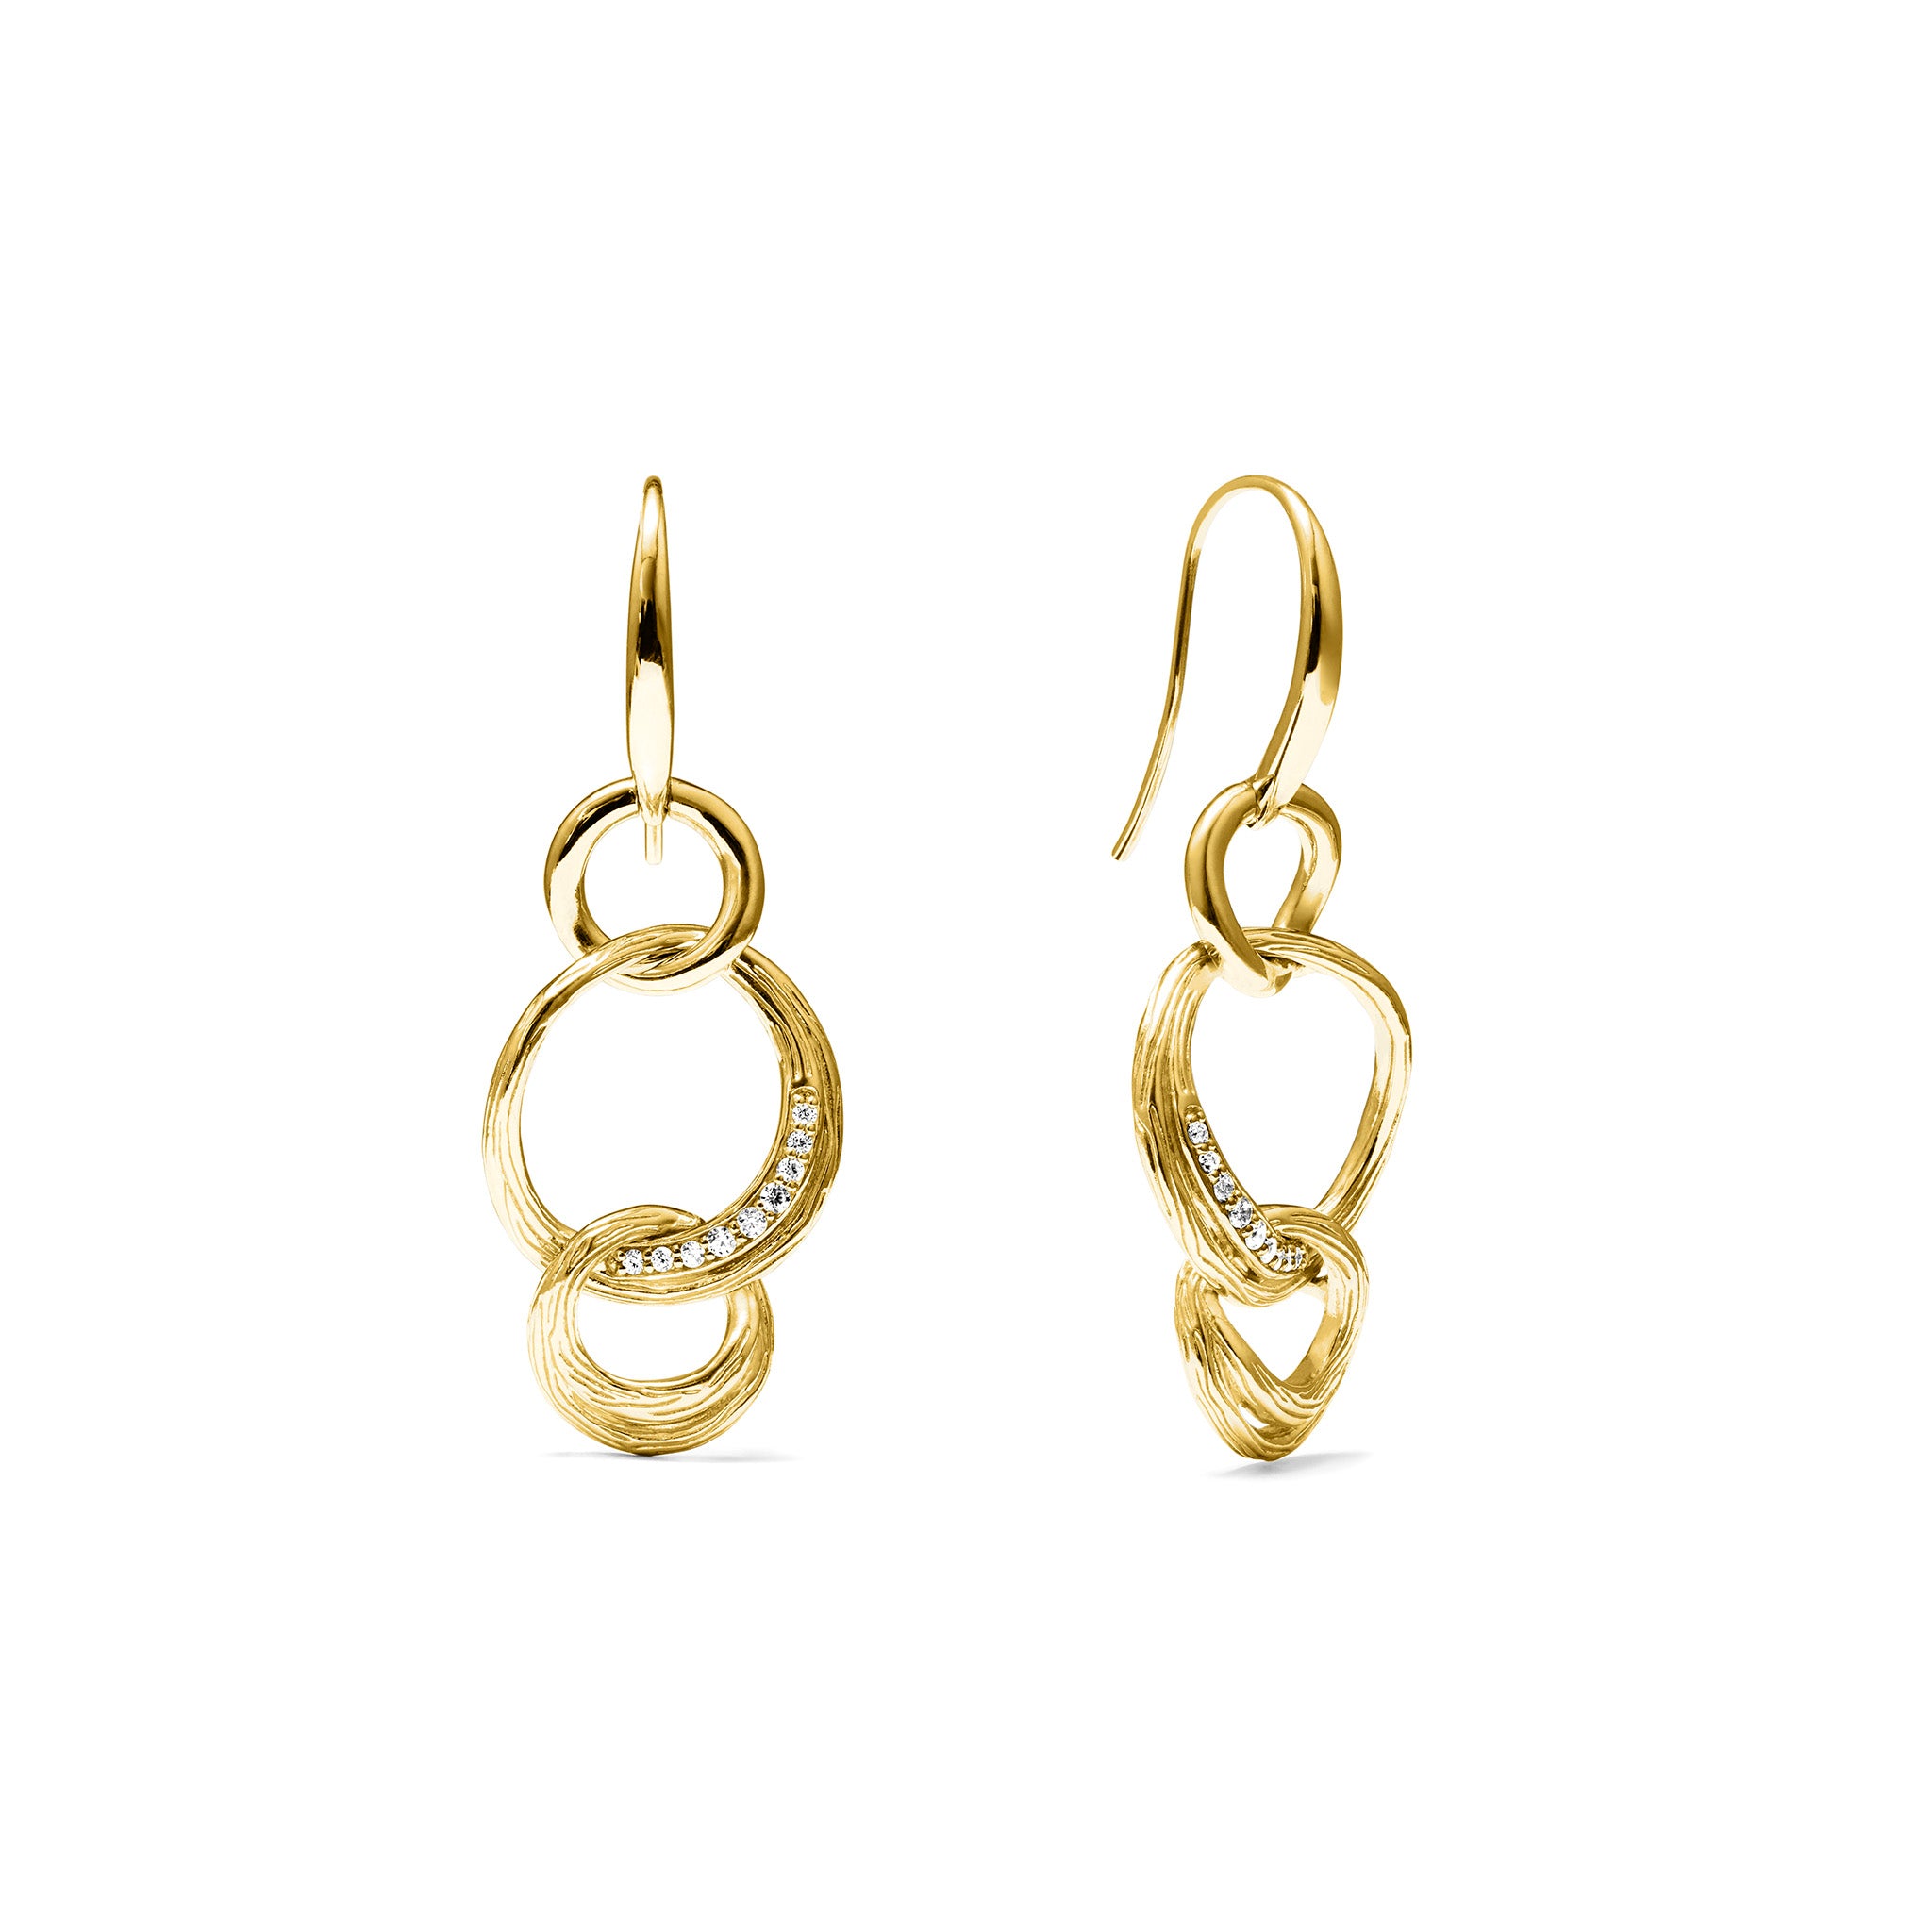 Santorini Triple Link Drop Earrings with Diamonds in 18K